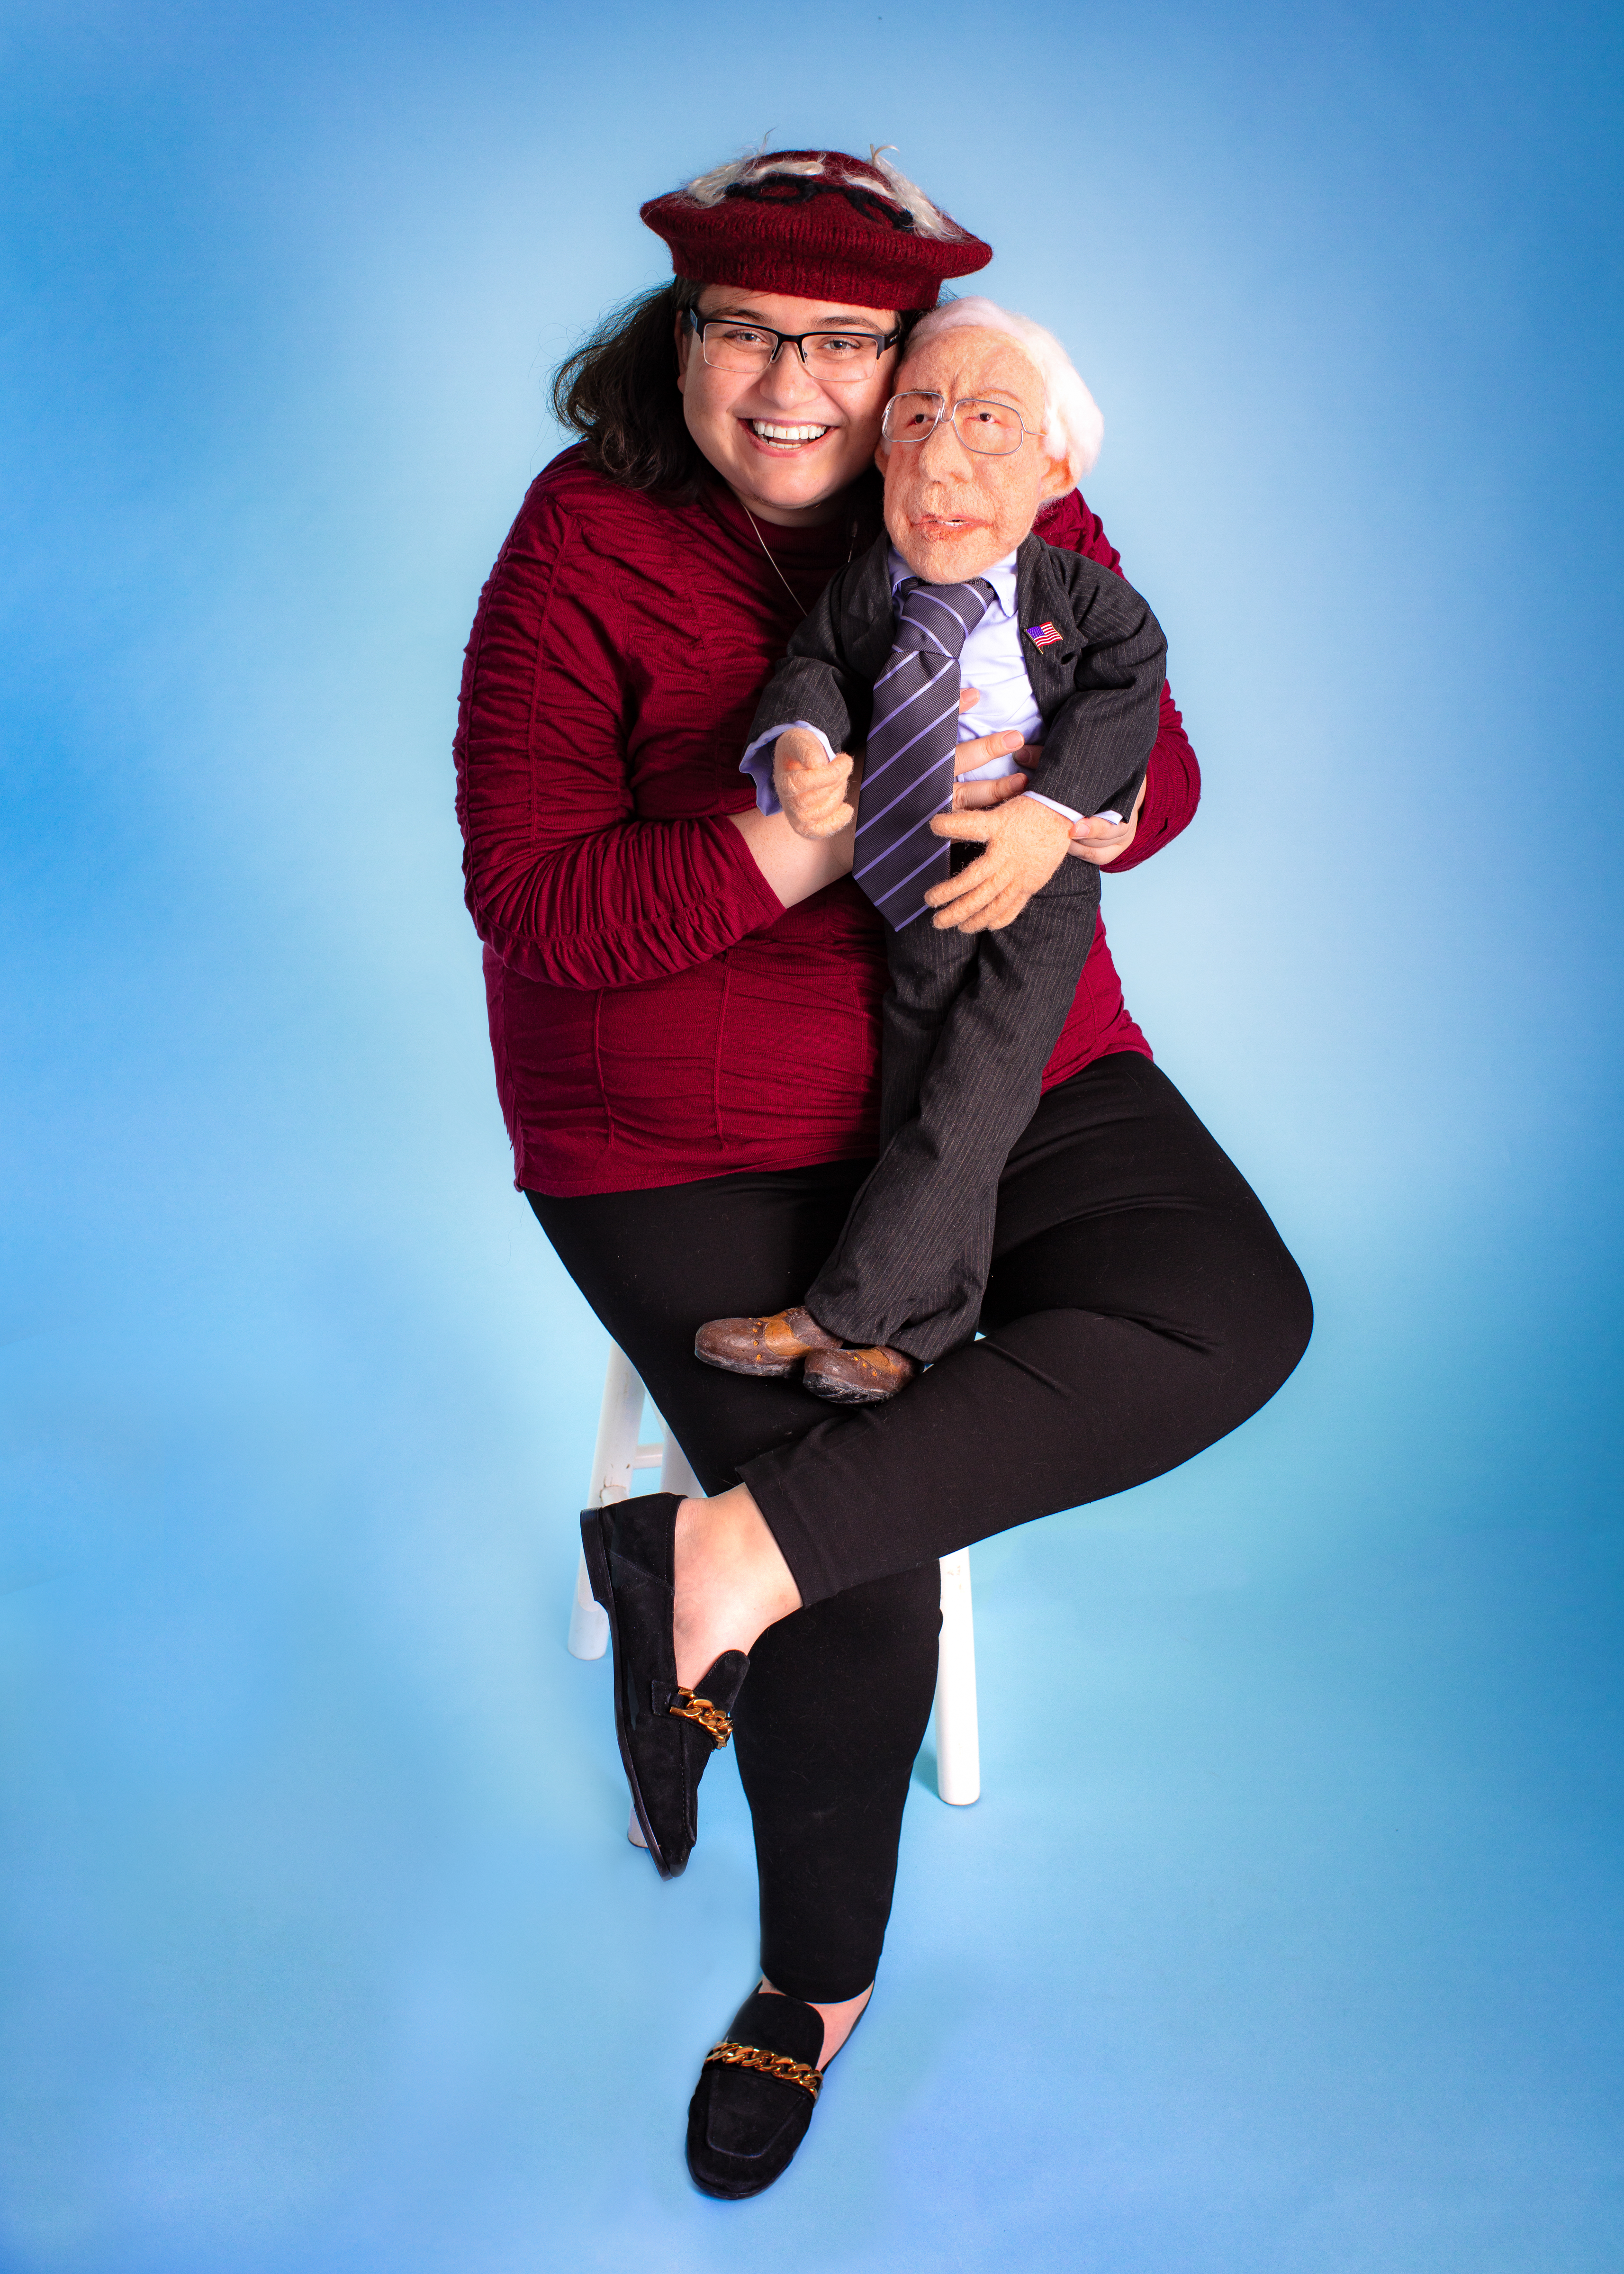 My Portrait with a Bernie Sanders Doll